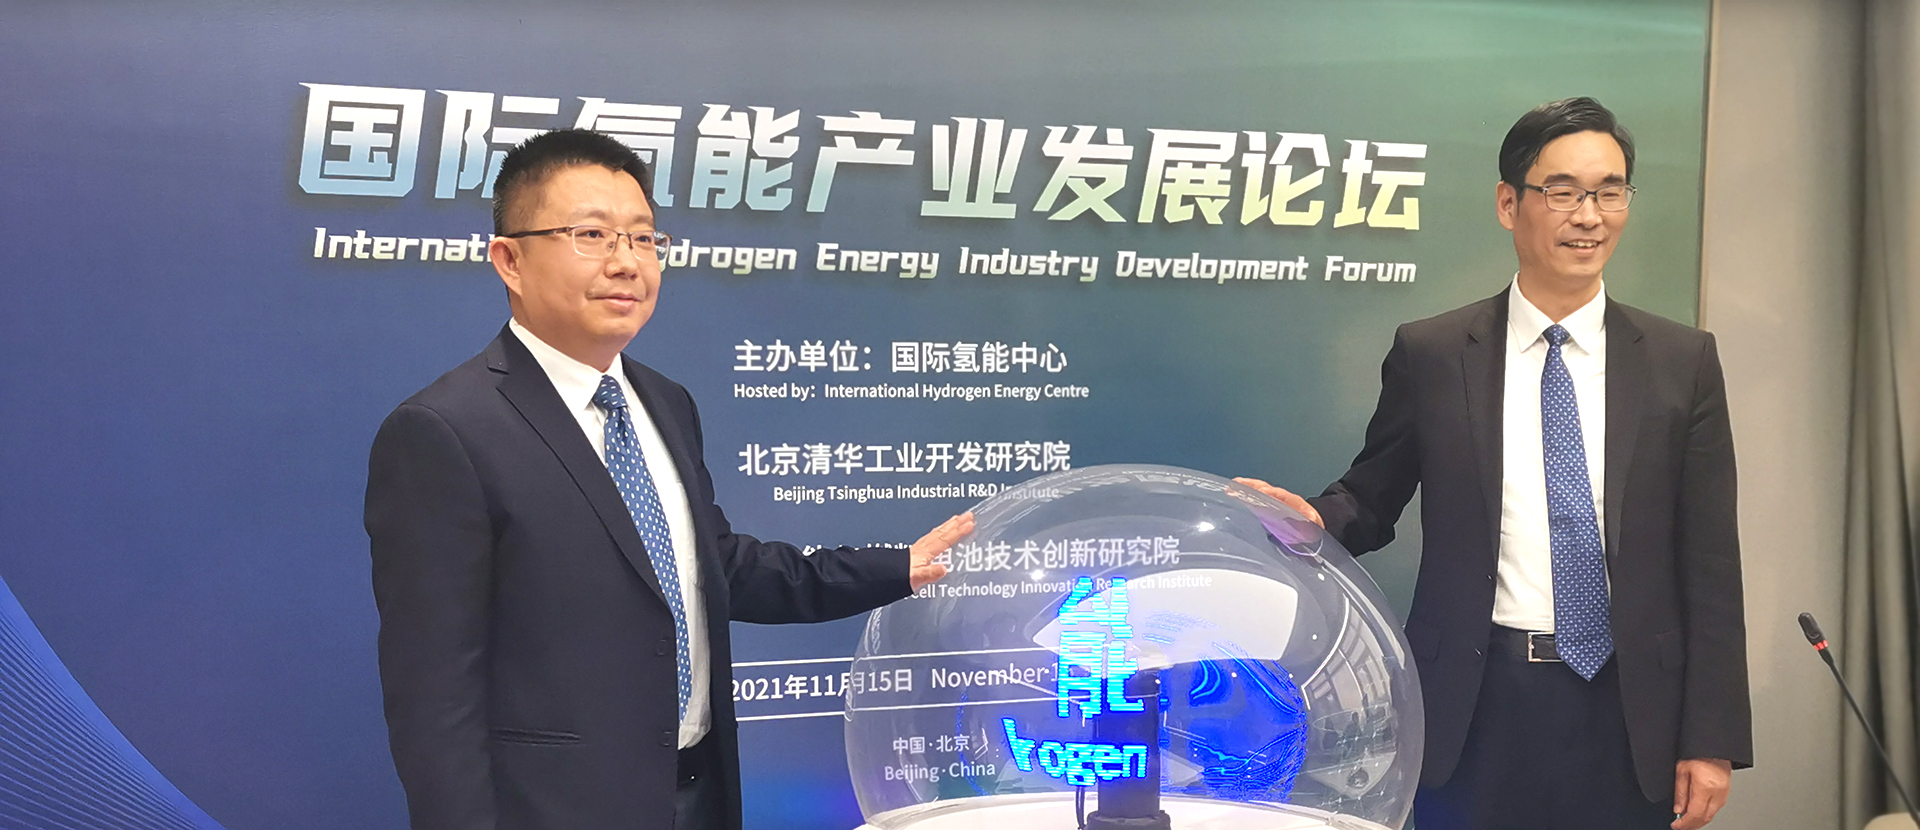 国际氢能产业发展论坛暨国际氢能中心启动仪式在京召开